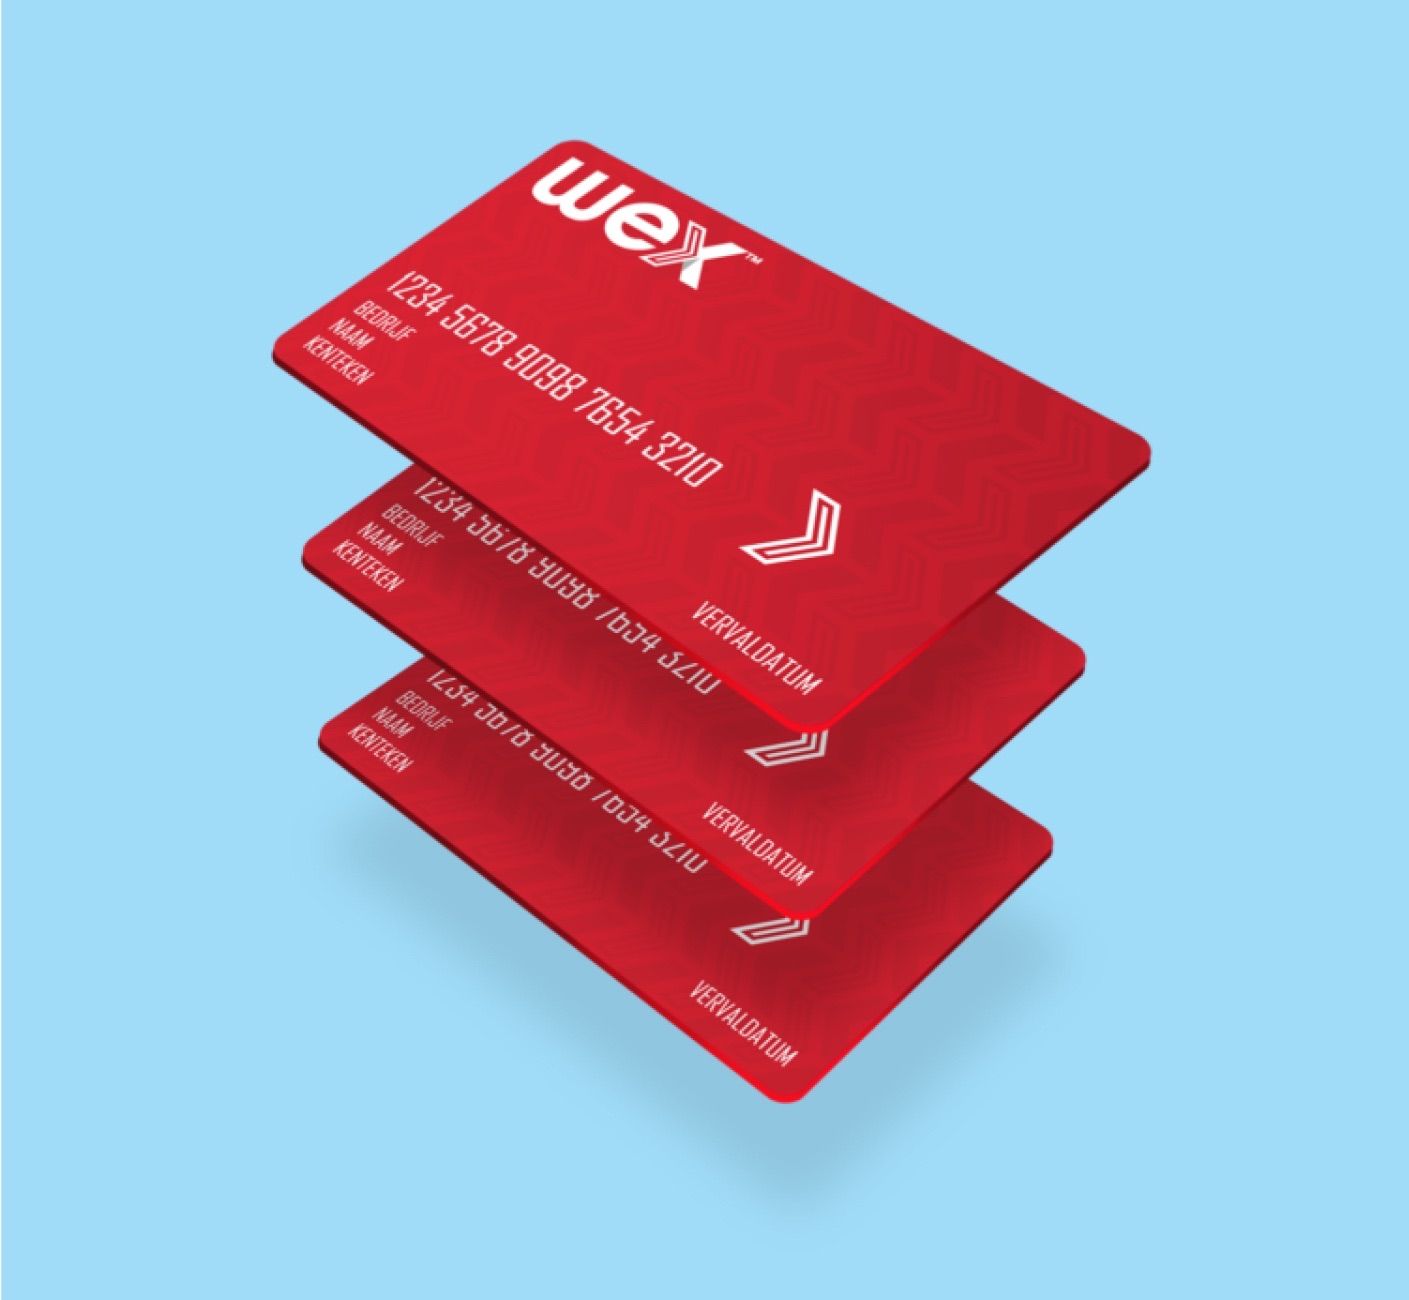 Un tas de cartes de flotte WEX